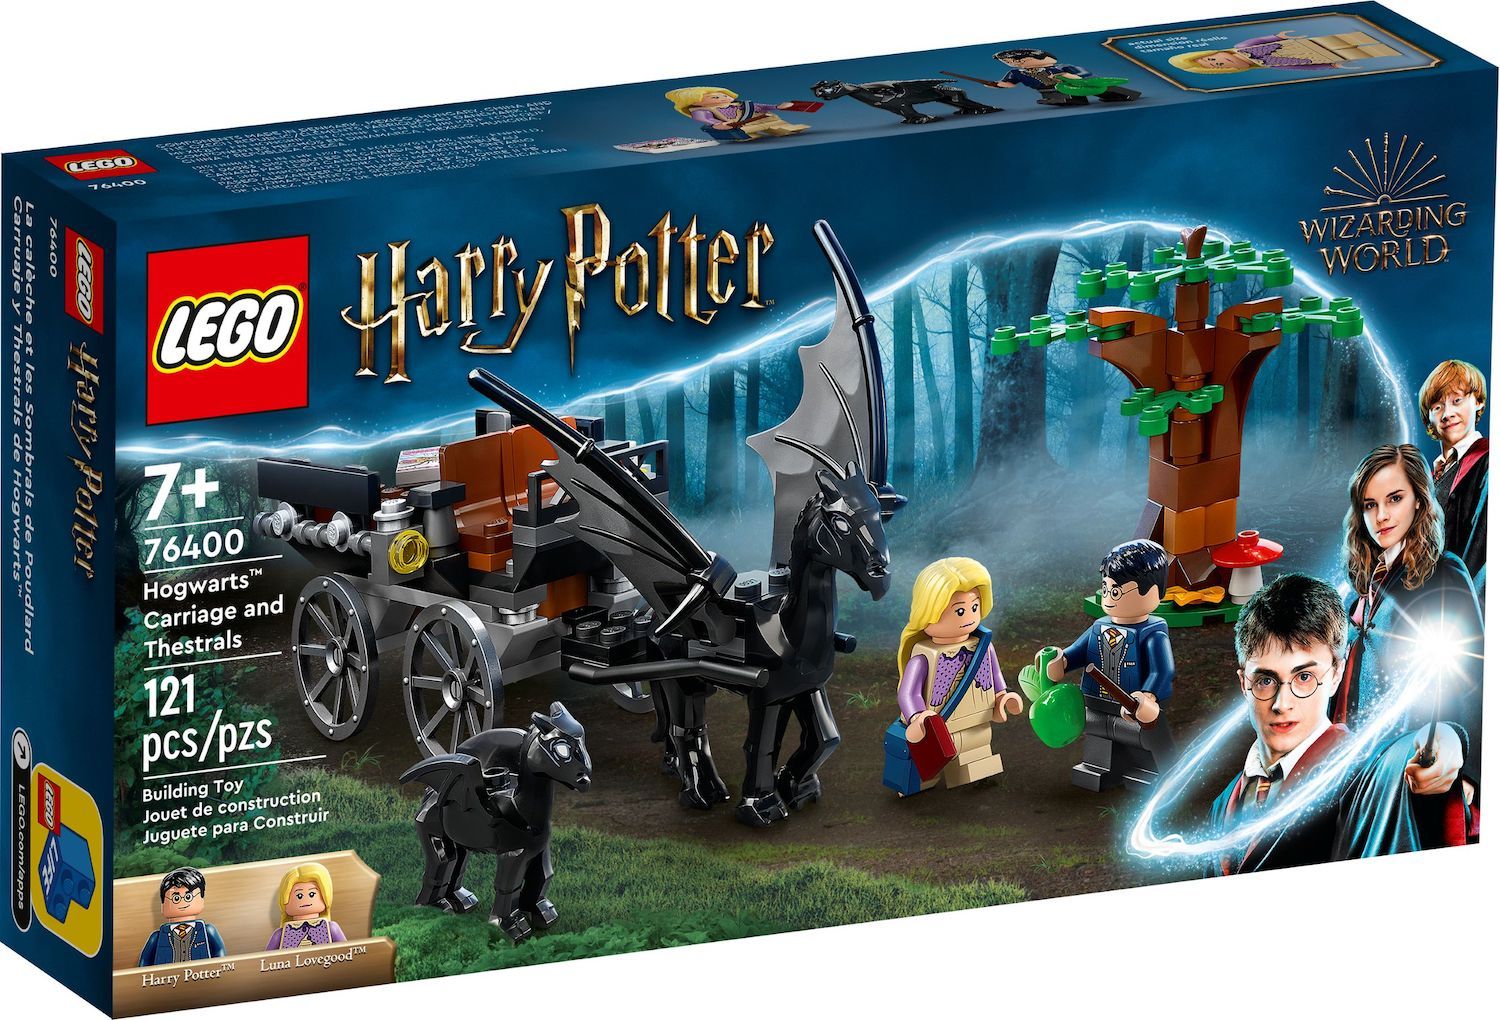 Hogwarts Courtyard  Lego hogwarts, Harry potter lego sets, Lego